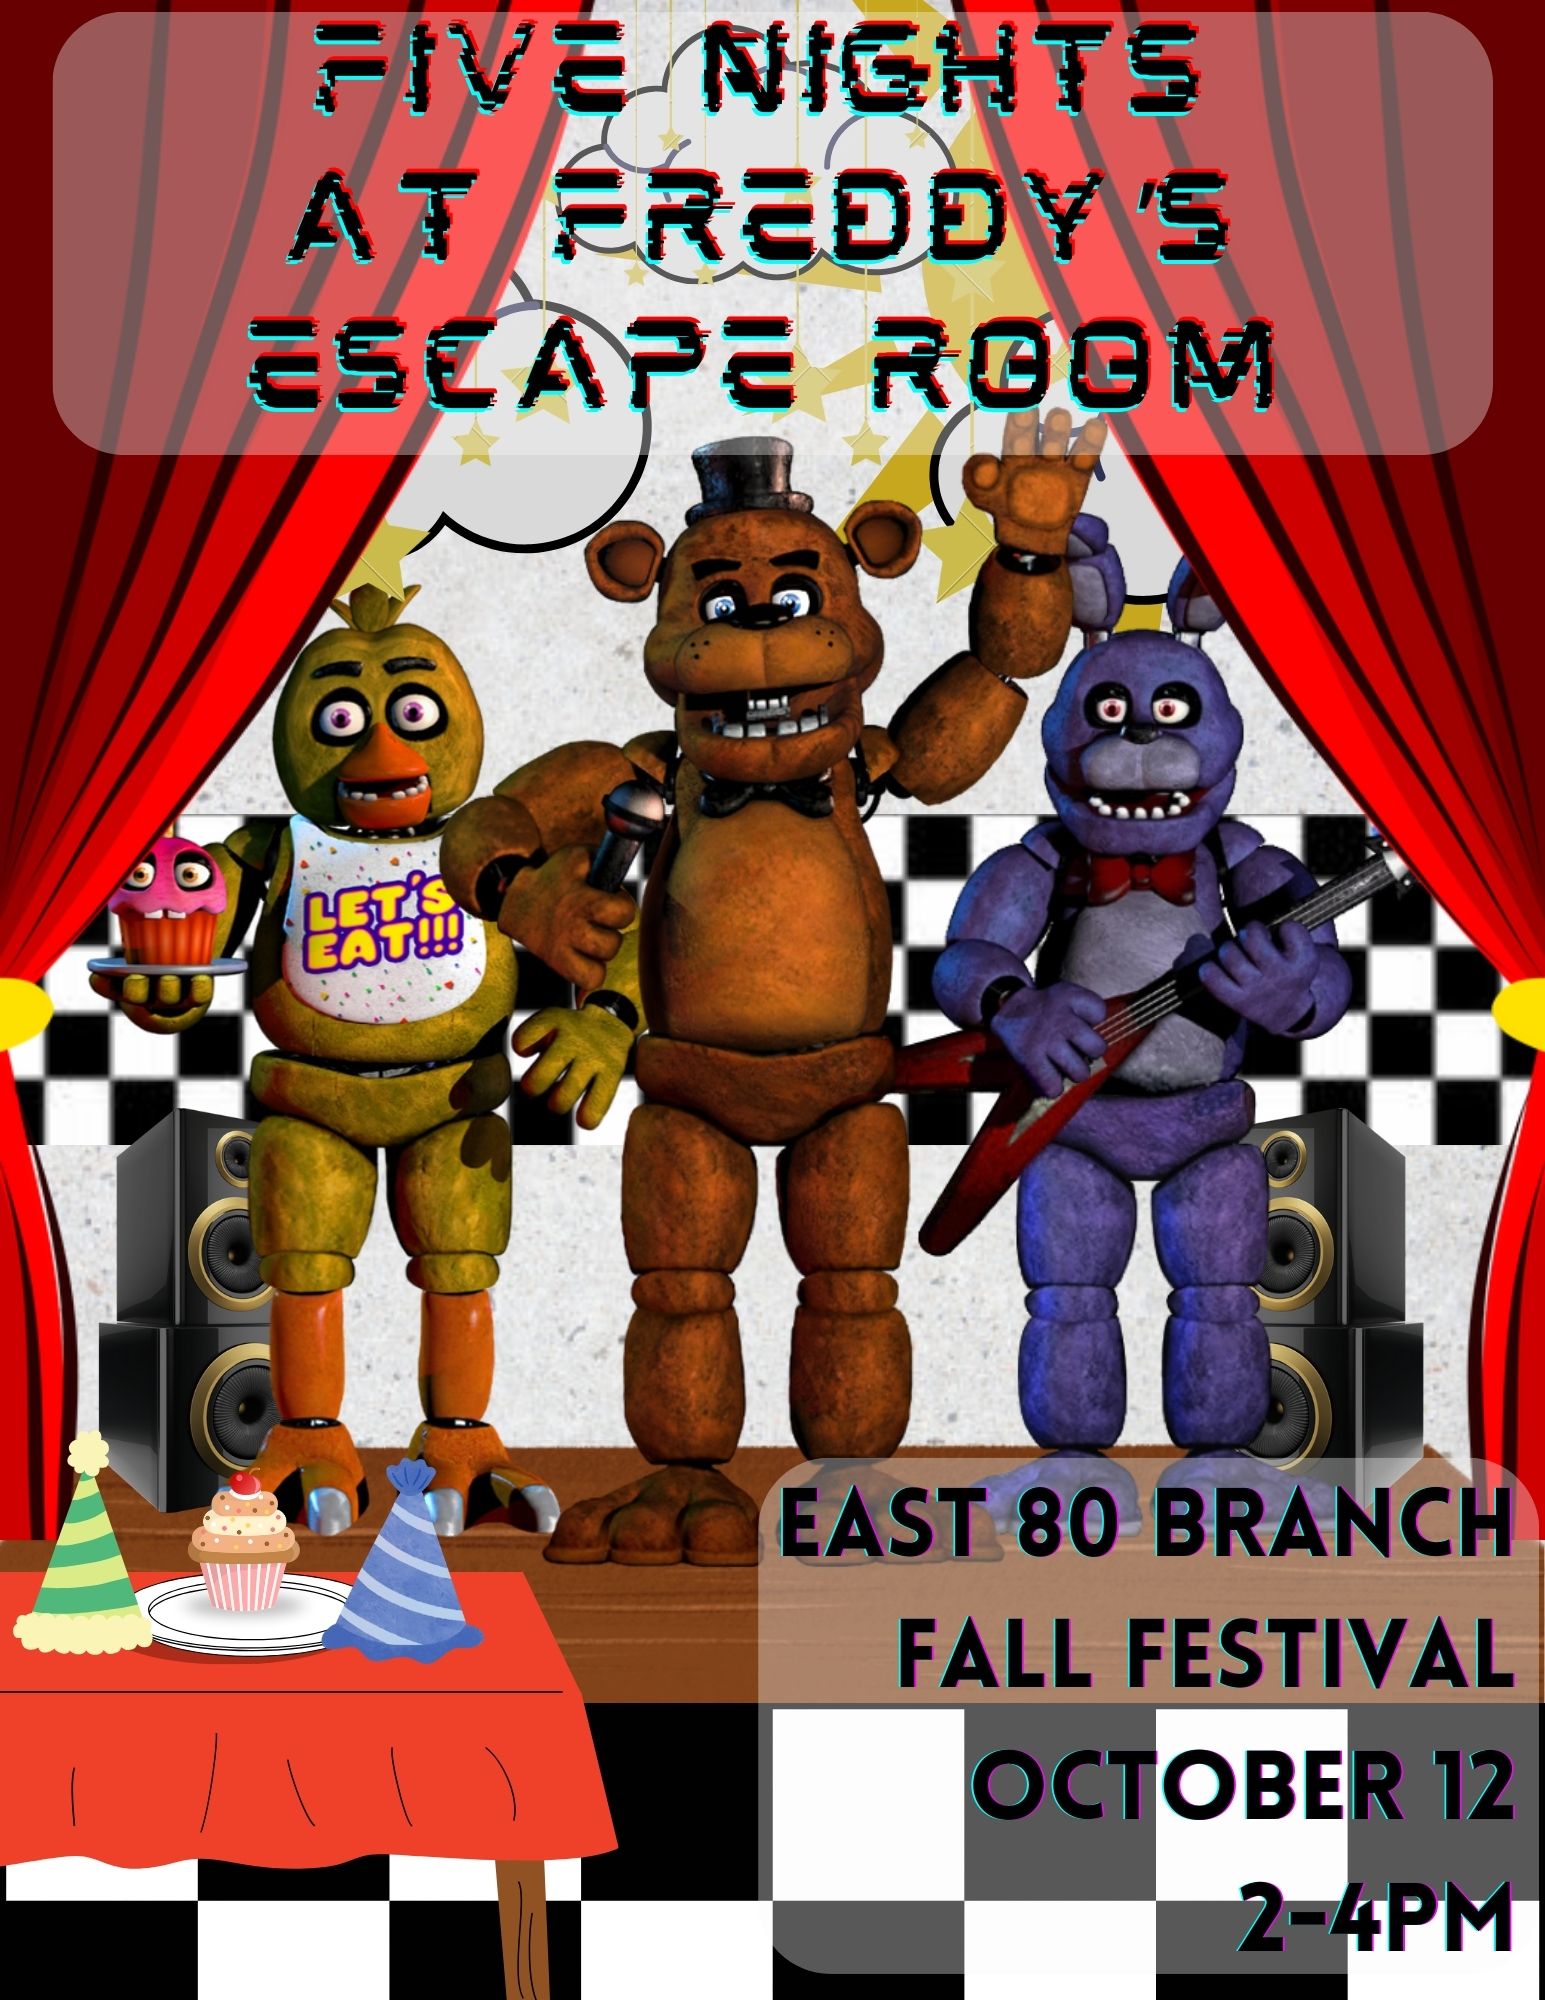 escape room